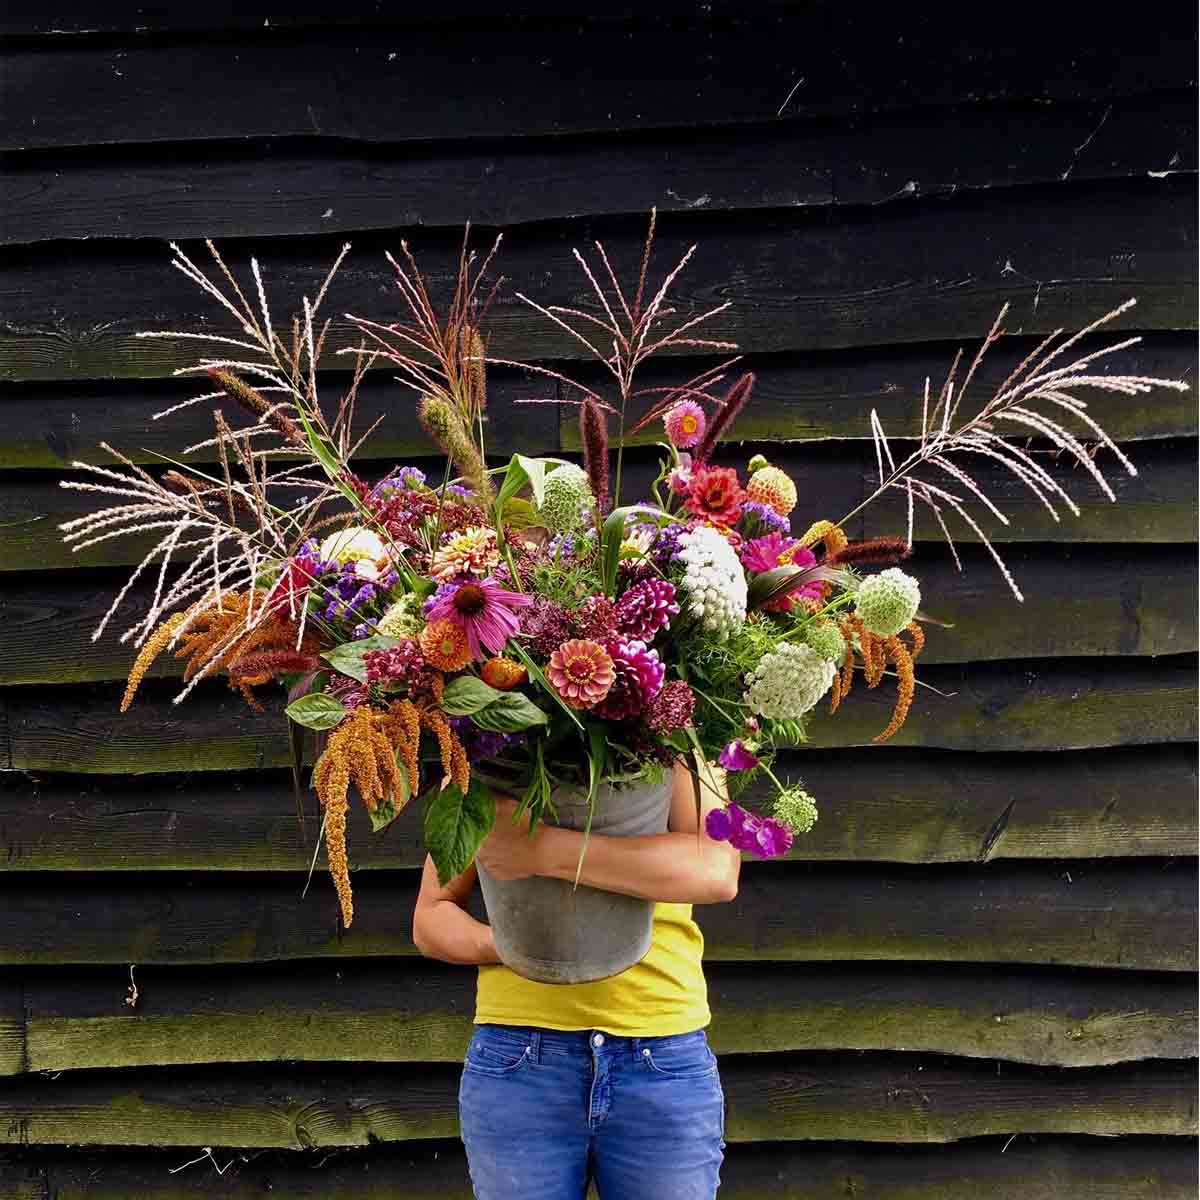 veld-vaas-florist-on-thursd-featured